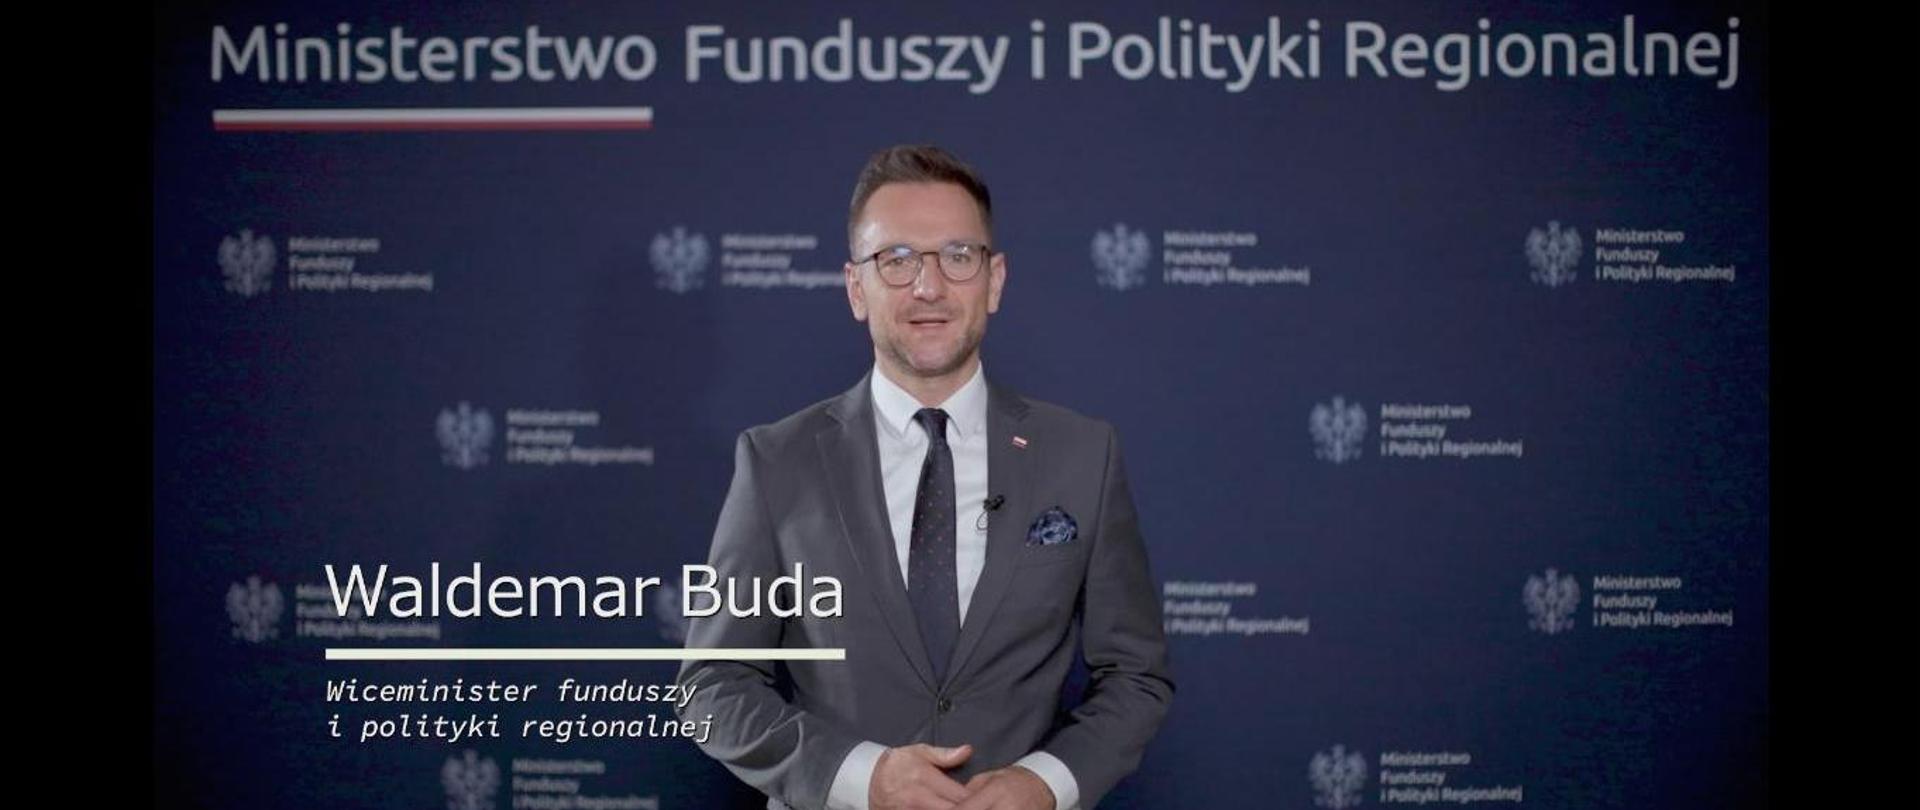 Zdjęcie wiceministra funduszy i polityki regionalnej Waldemara Budy na tle "ścianki" z logo resortu.